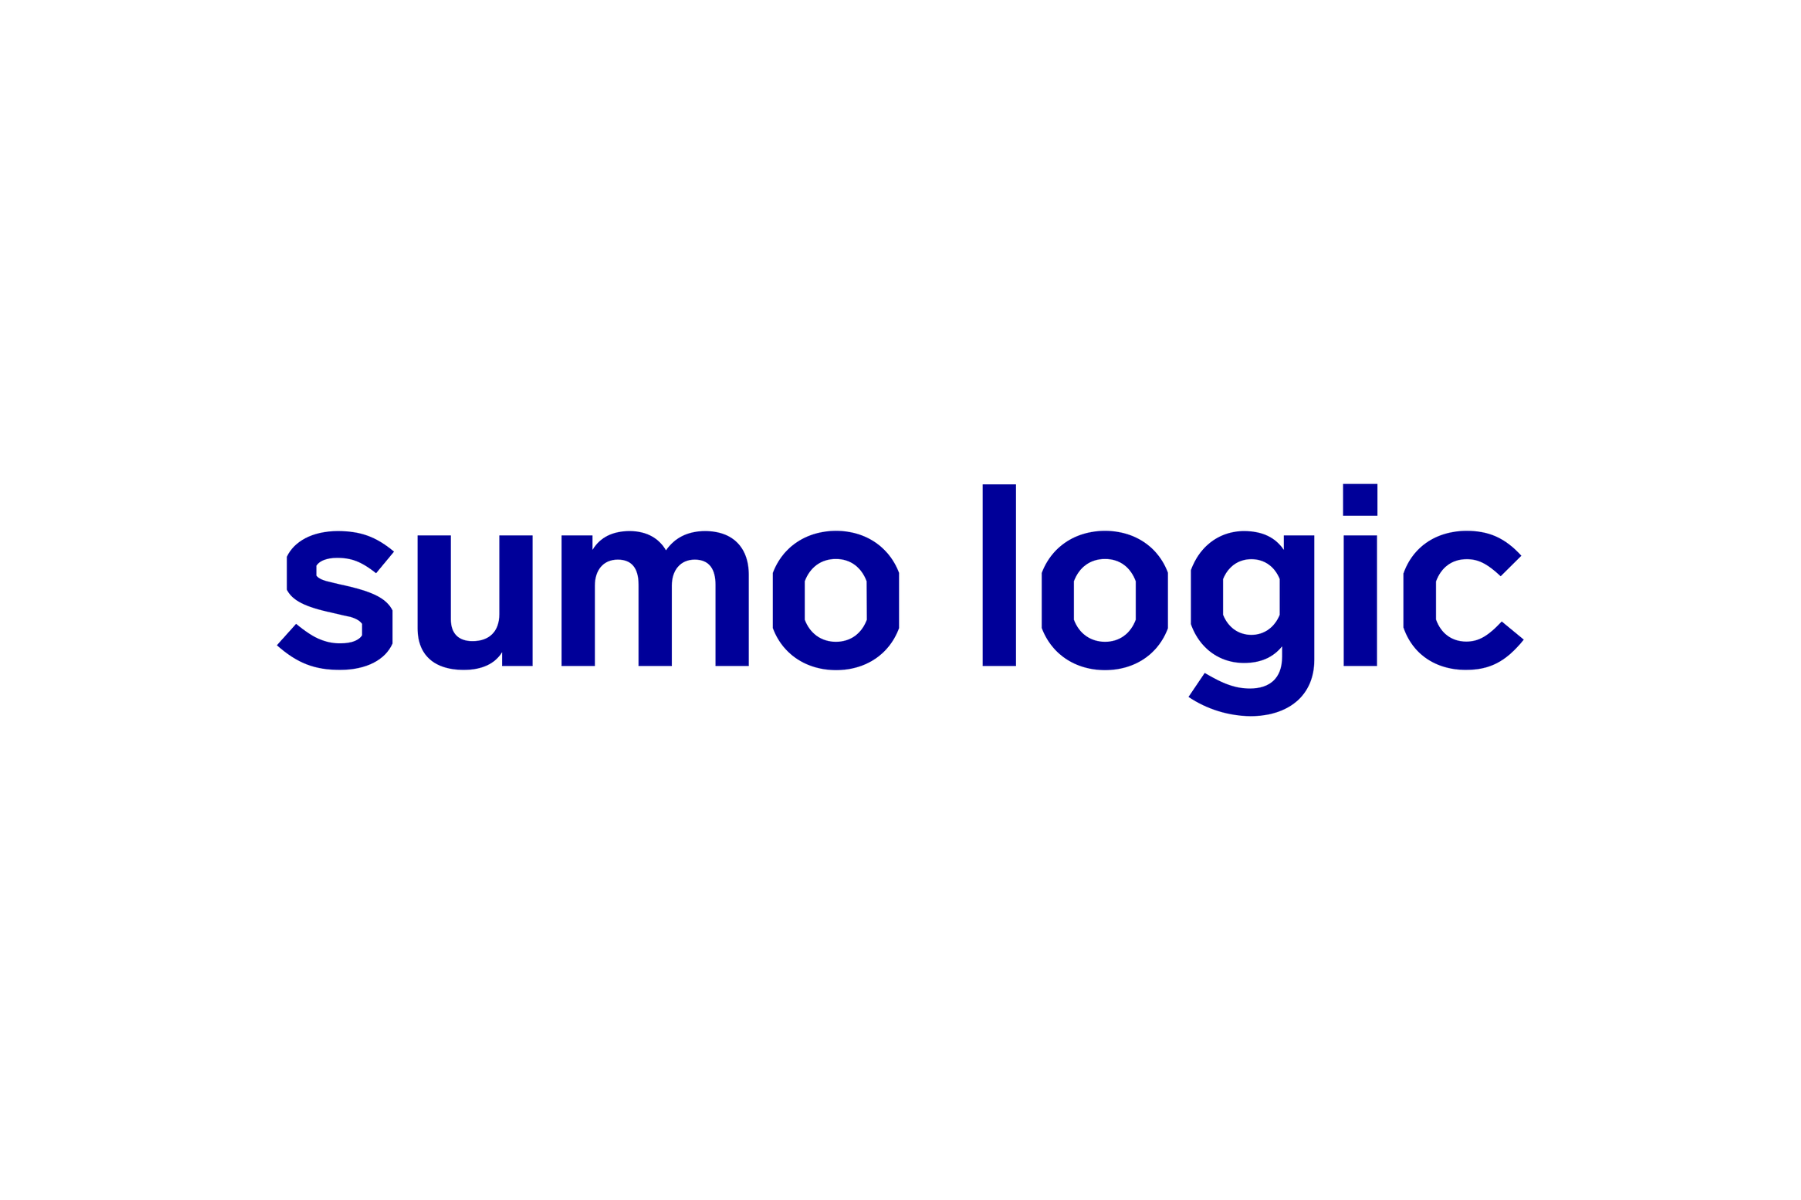 Sumo Logic